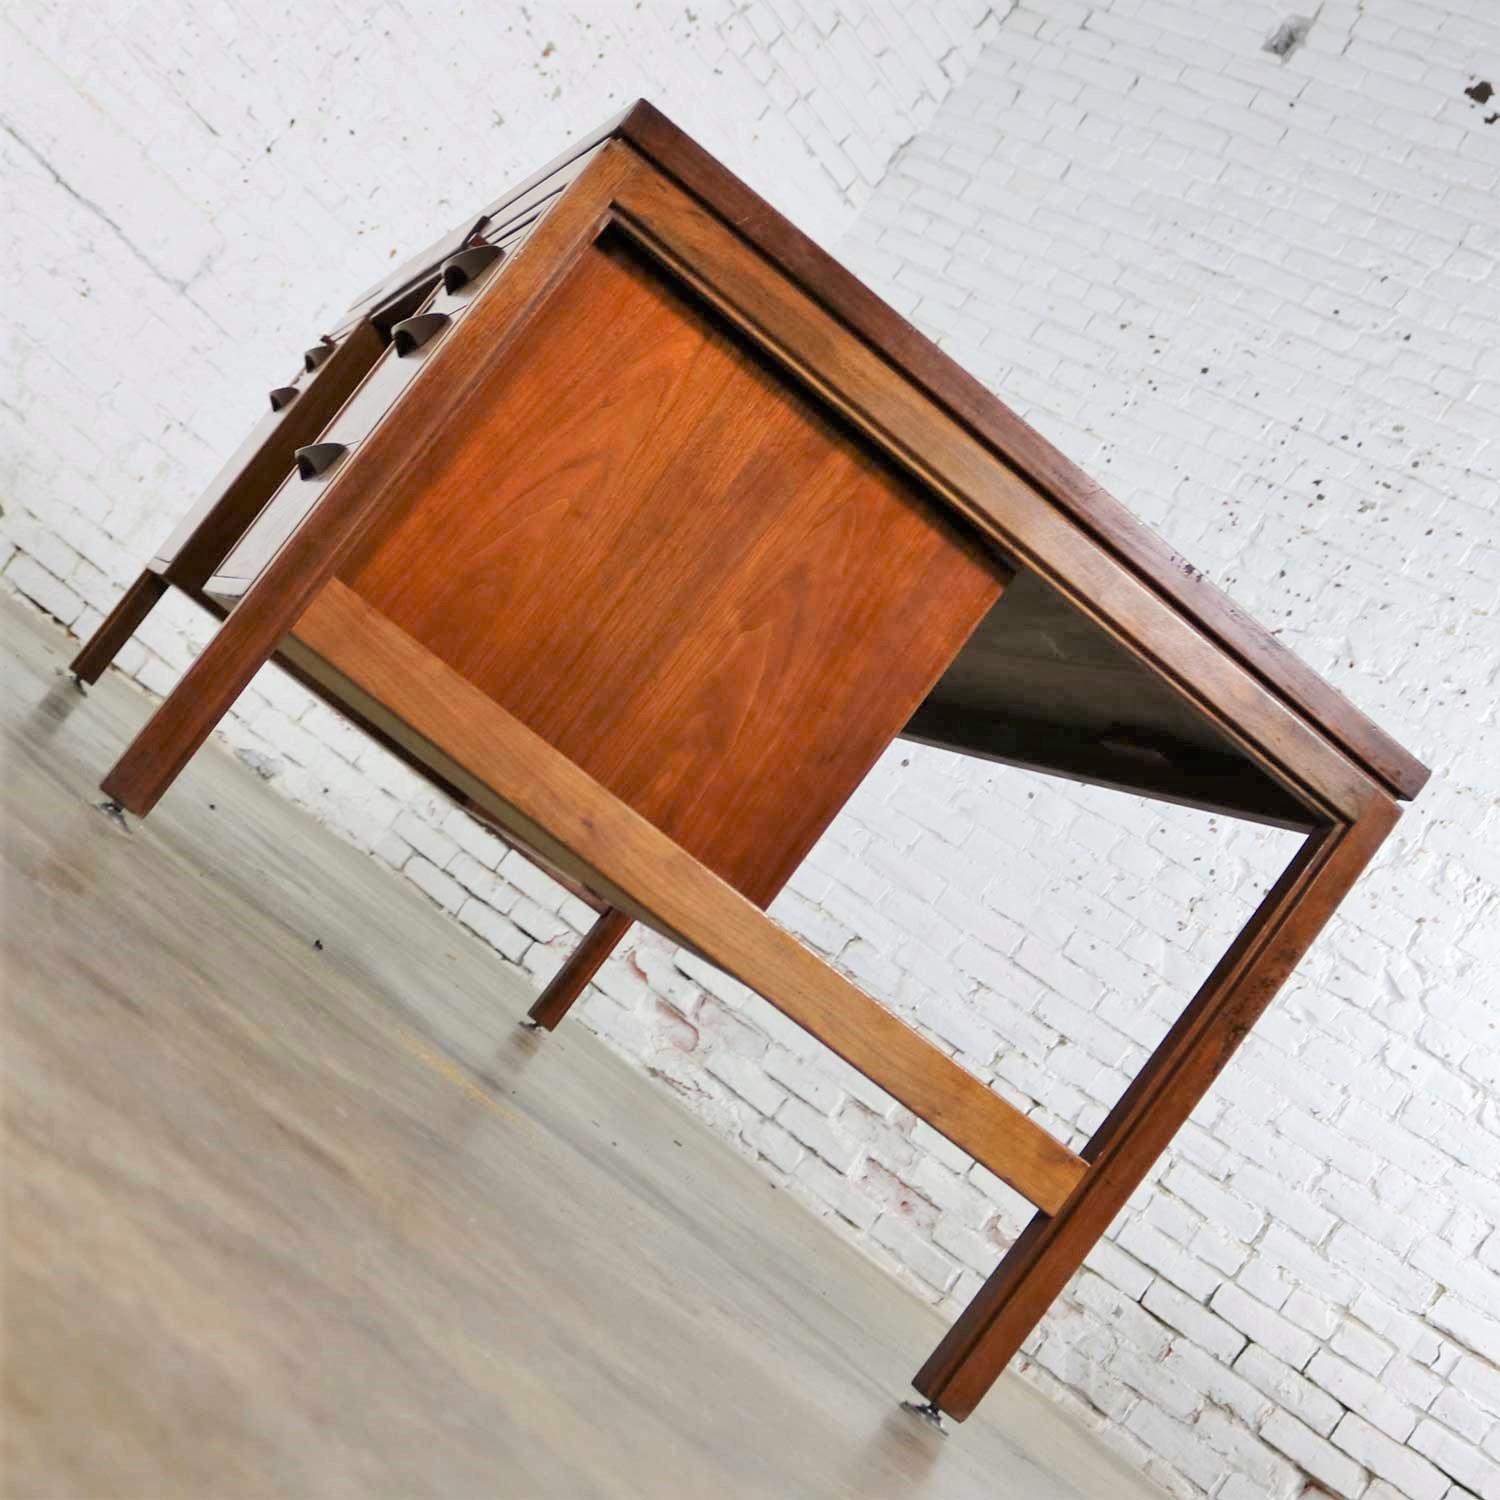 Danish Scandinavian Modern Executive Desk in Walnut by Jens Risom for Risom Designs